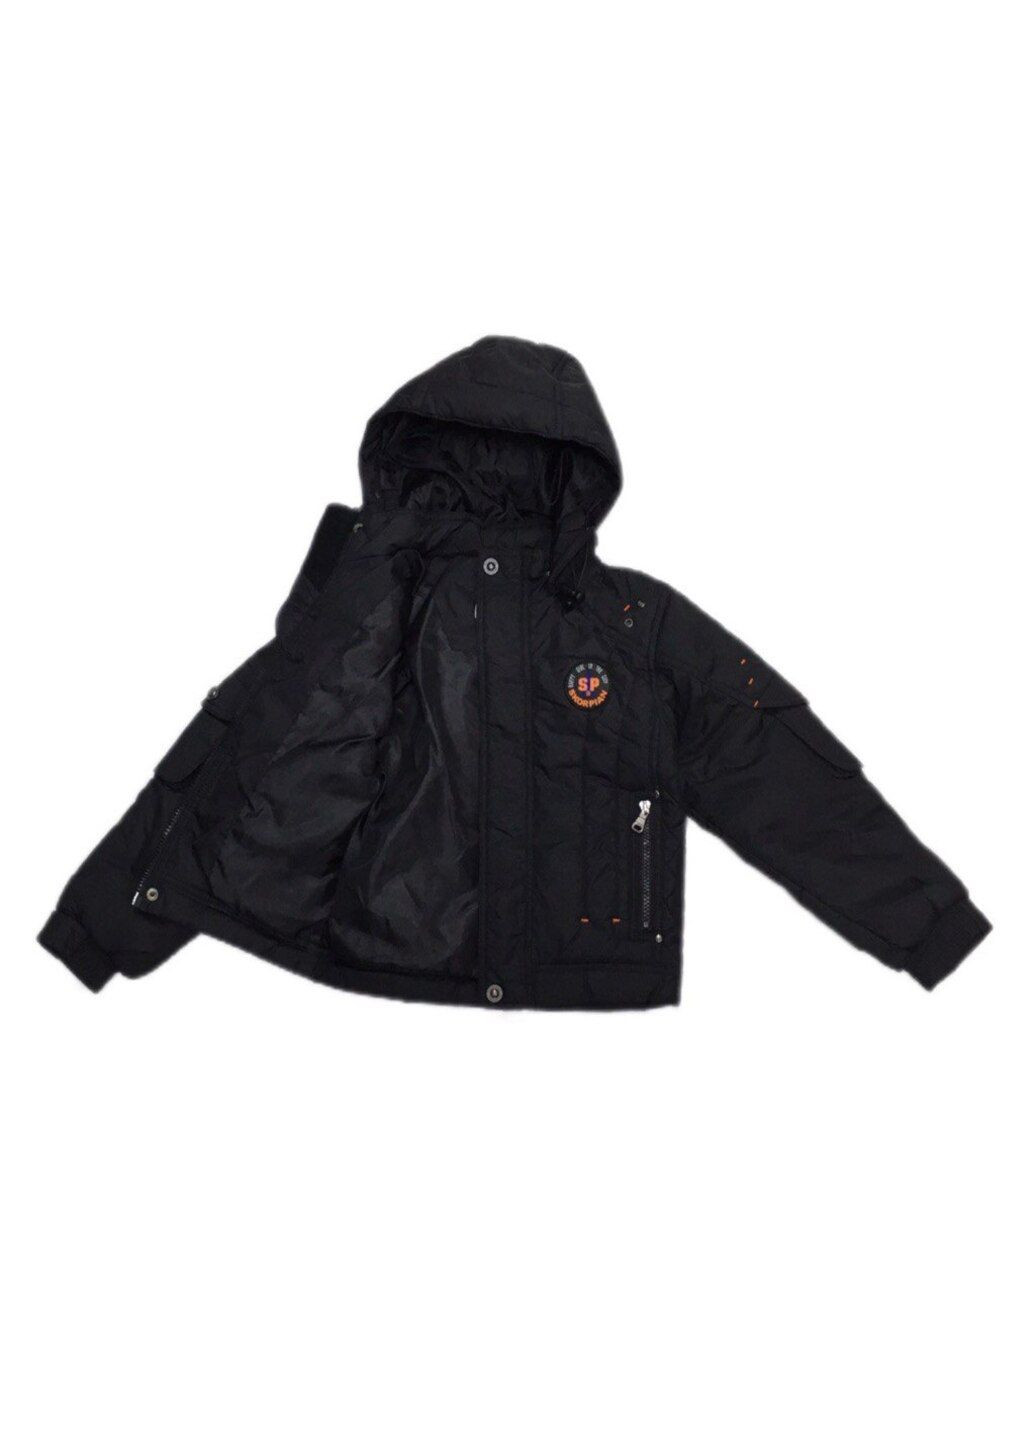 Черная демисезонная куртка демисезон для мальчика в черном цвете. Skorpian